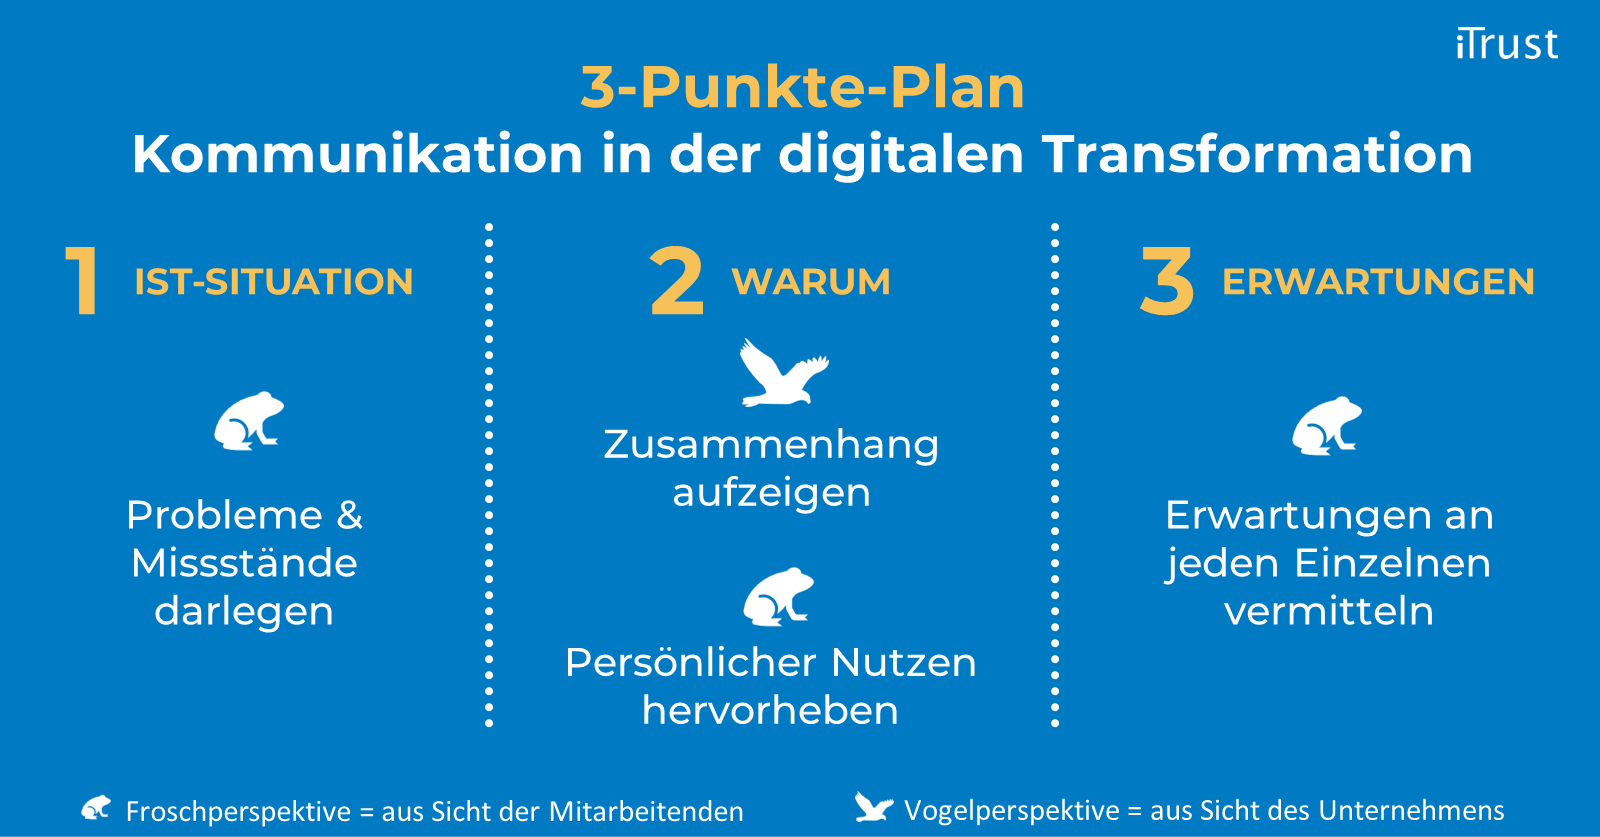 Kommunikation in der digitalen Transformation – Der 3-Punkte-Plan - Übersicht